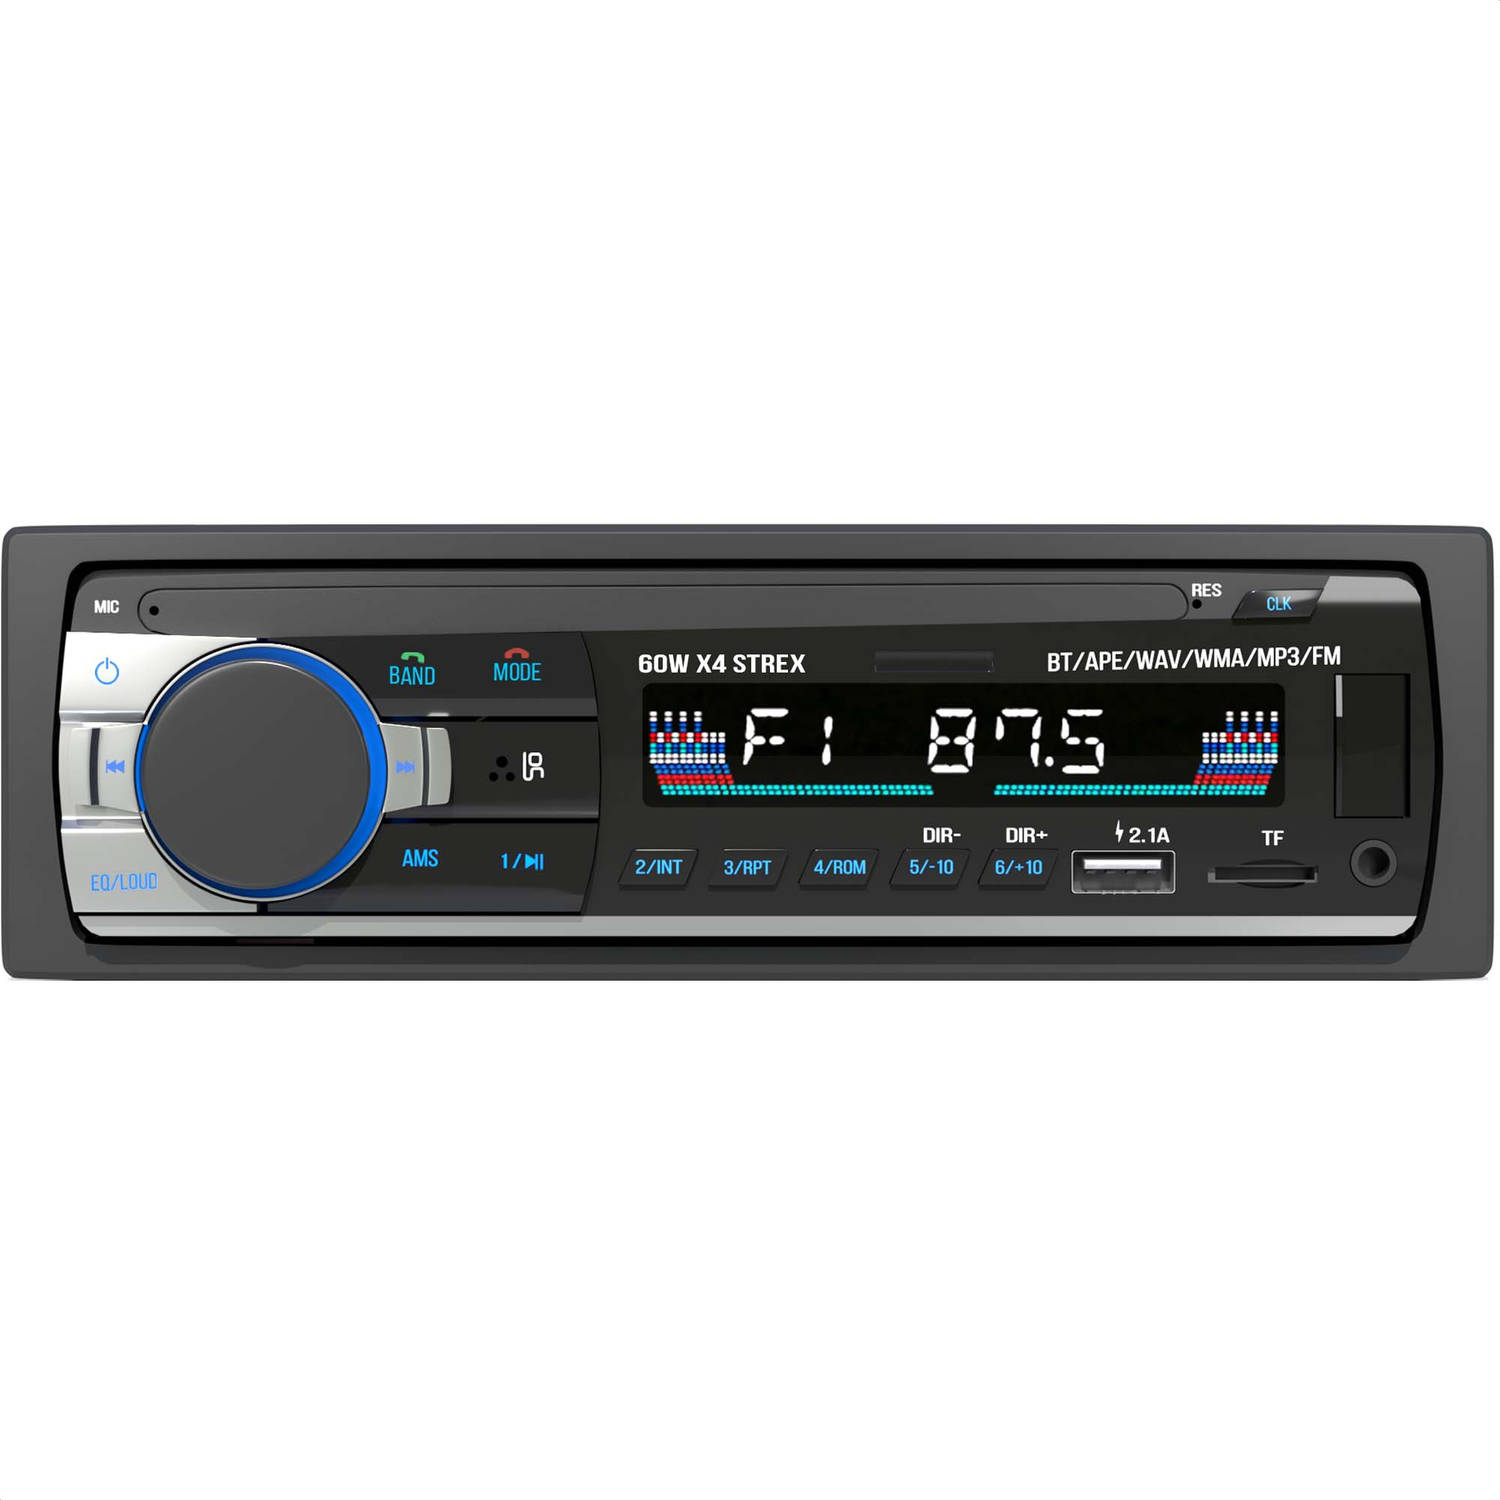 Weven album commando Strex Autoradio met Bluetooth voor alle auto's - USB, AUX en Handsfree -  Afstandsbediening - Enkel DIN Auto Radio met | Blokker